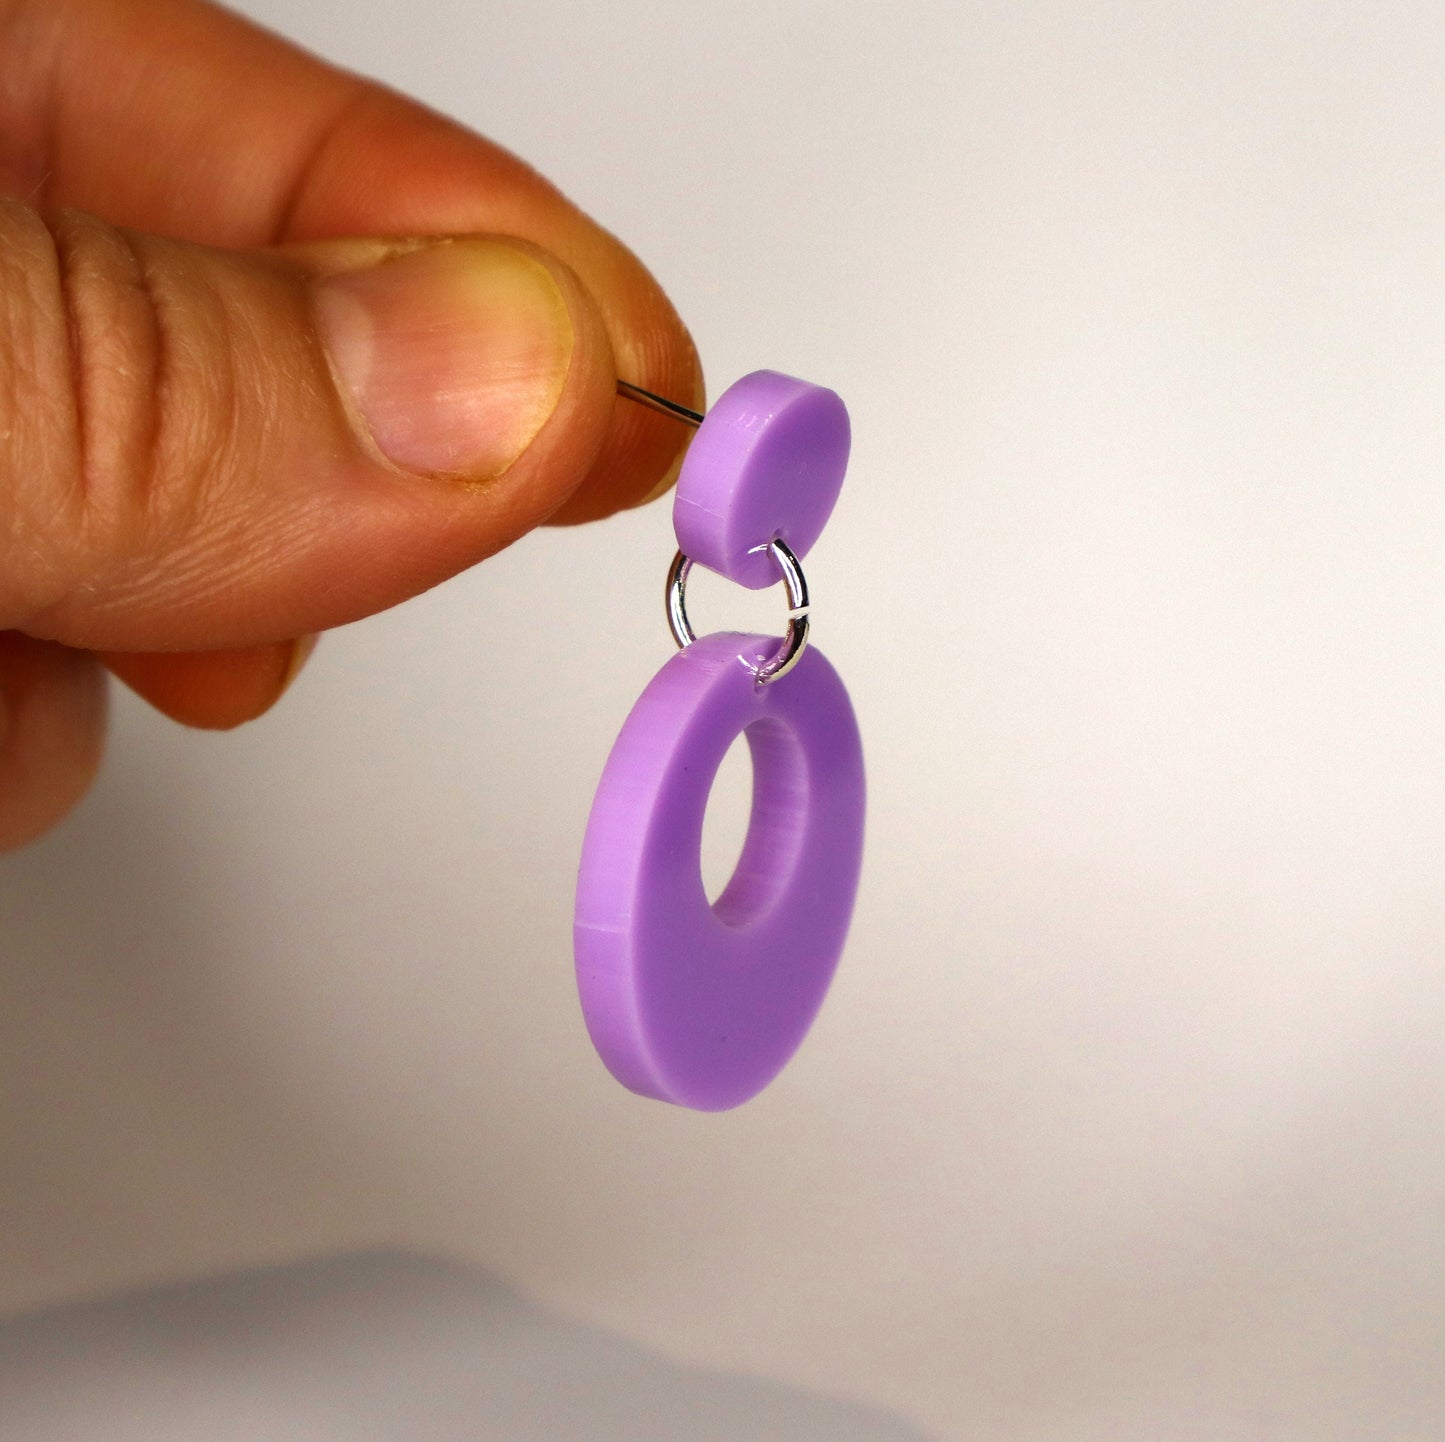 Retro Mod Earrings - laser cut acrylic - purple